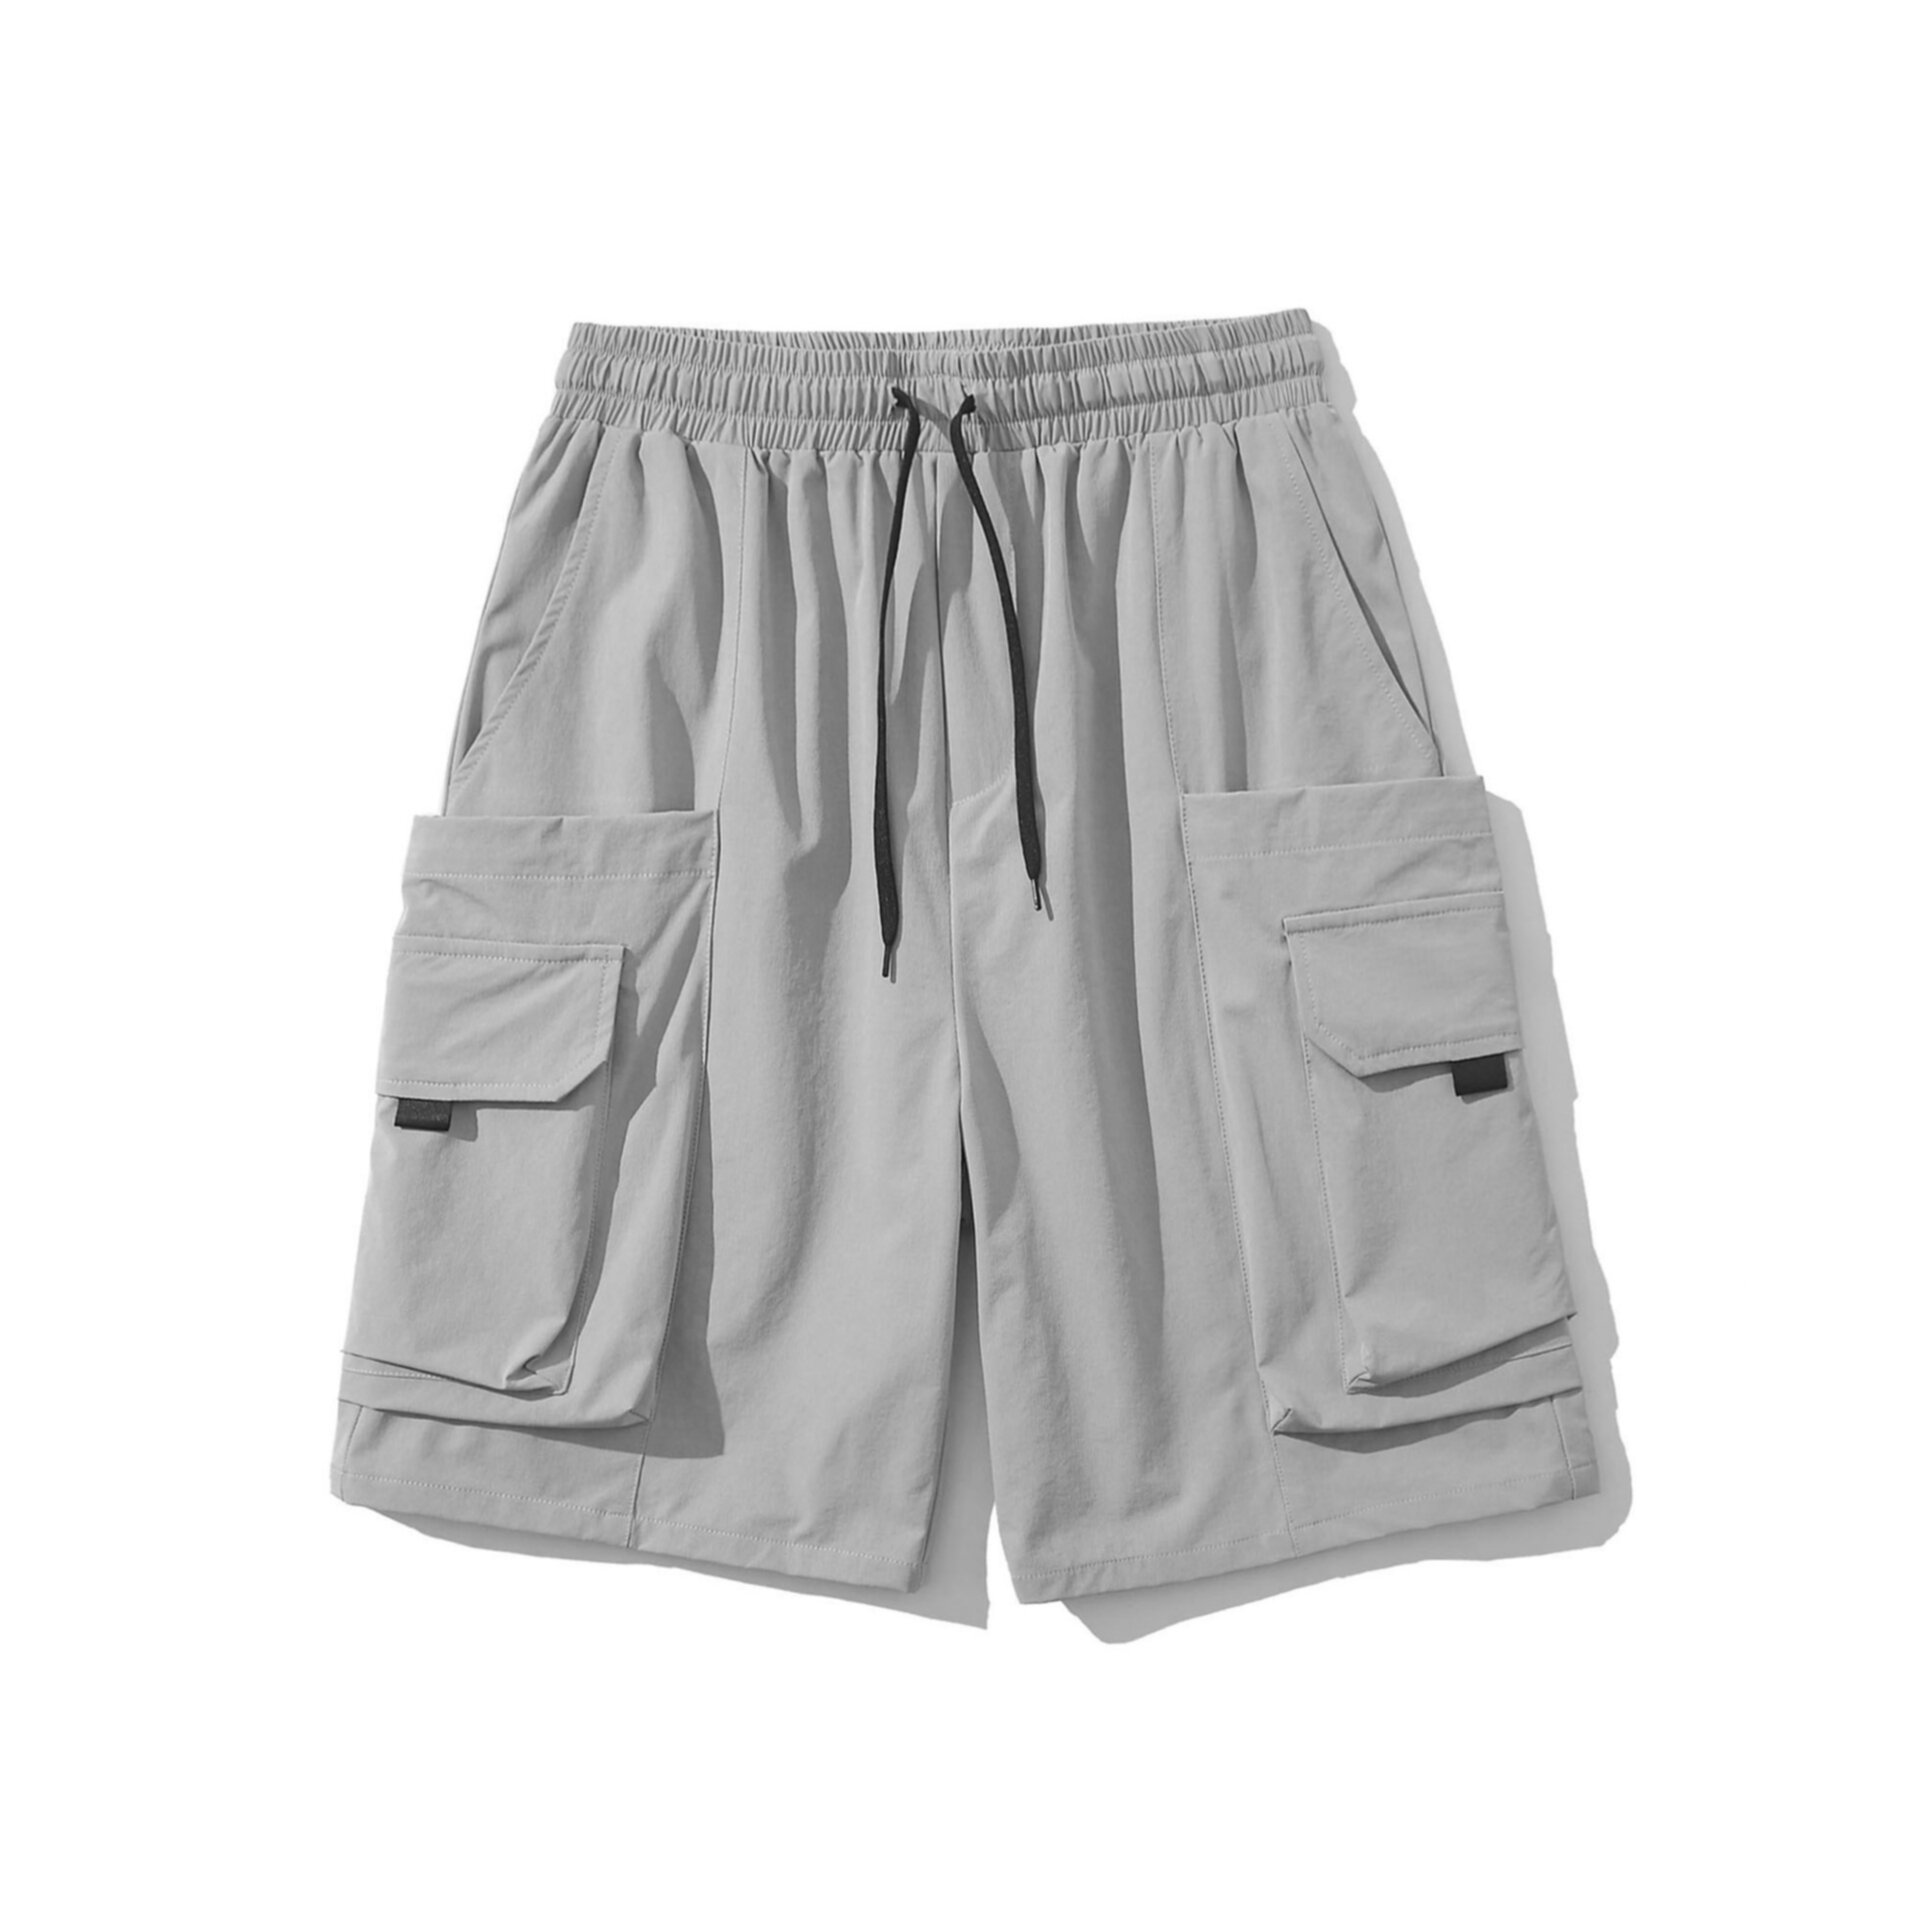 Summer men's multi pocket work shorts